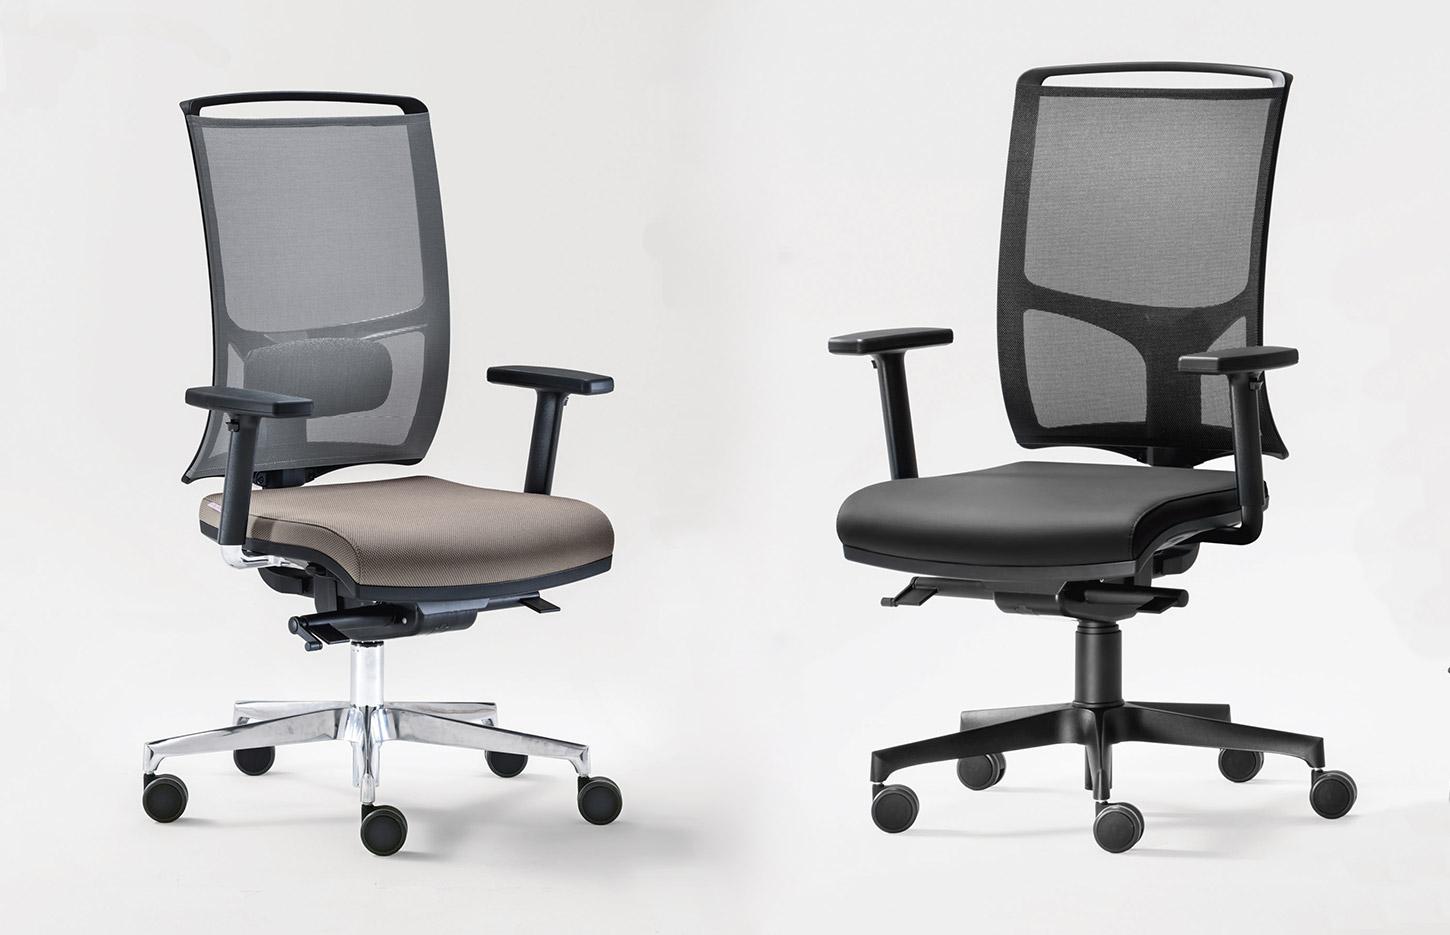 Siège et fauteuil de bureau en résille, tissu ou similicuir avec ou sans accoudoirs, gamme Aprica, mobilier de bureau France Bureau